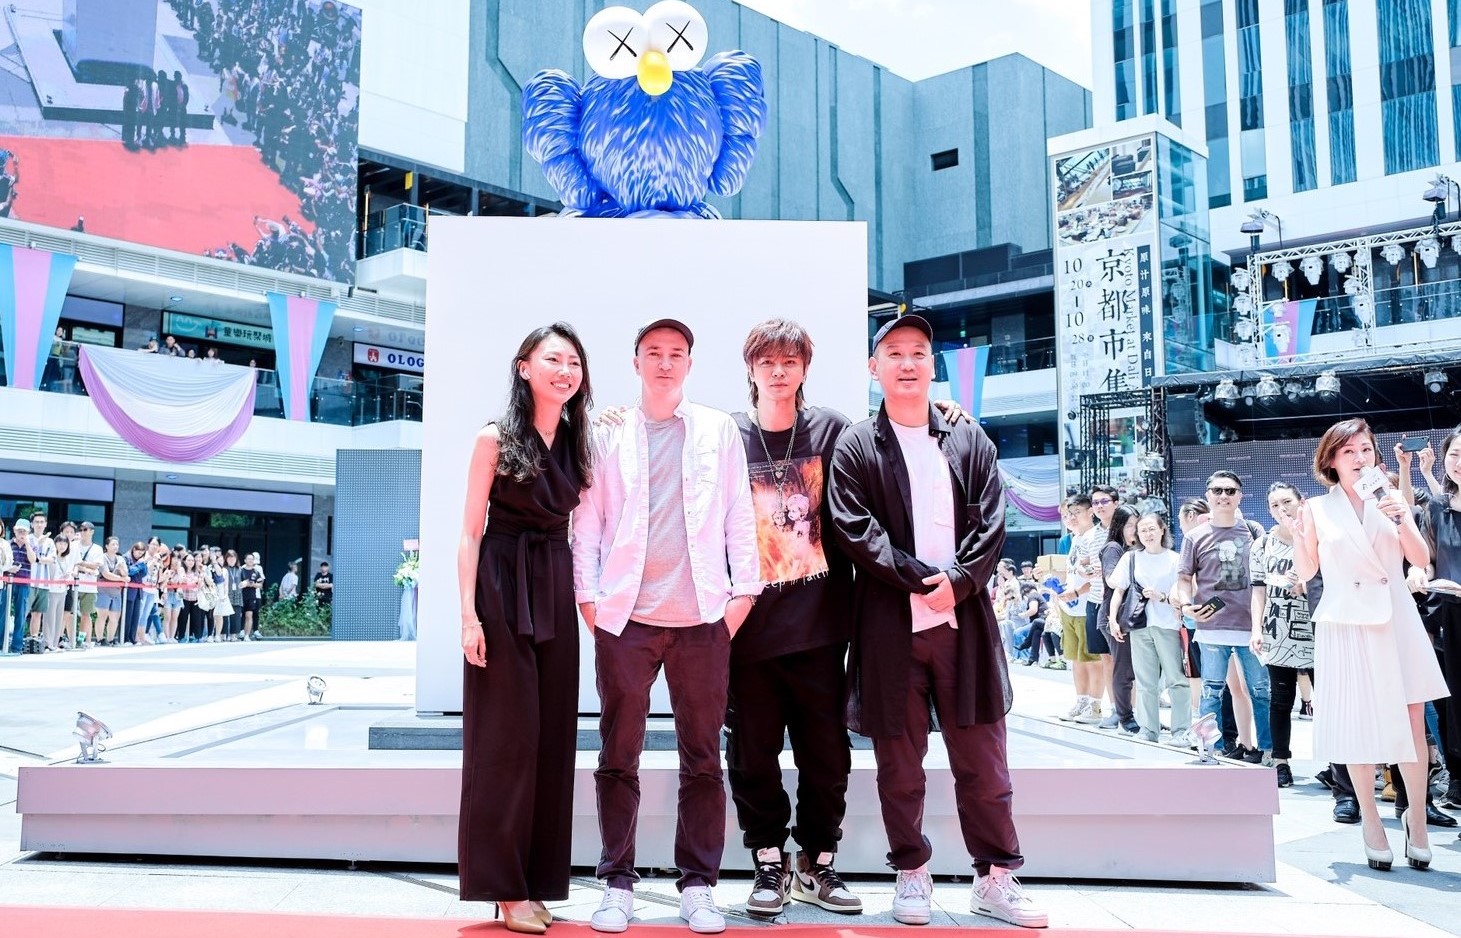 羅志祥與藝術家KAWS、策展人SK Lam、中陽藝術代表-張聞雨一同出席「2019 DALI ART藝術廣場全新KAWS BFF雕塑」剪綵活動